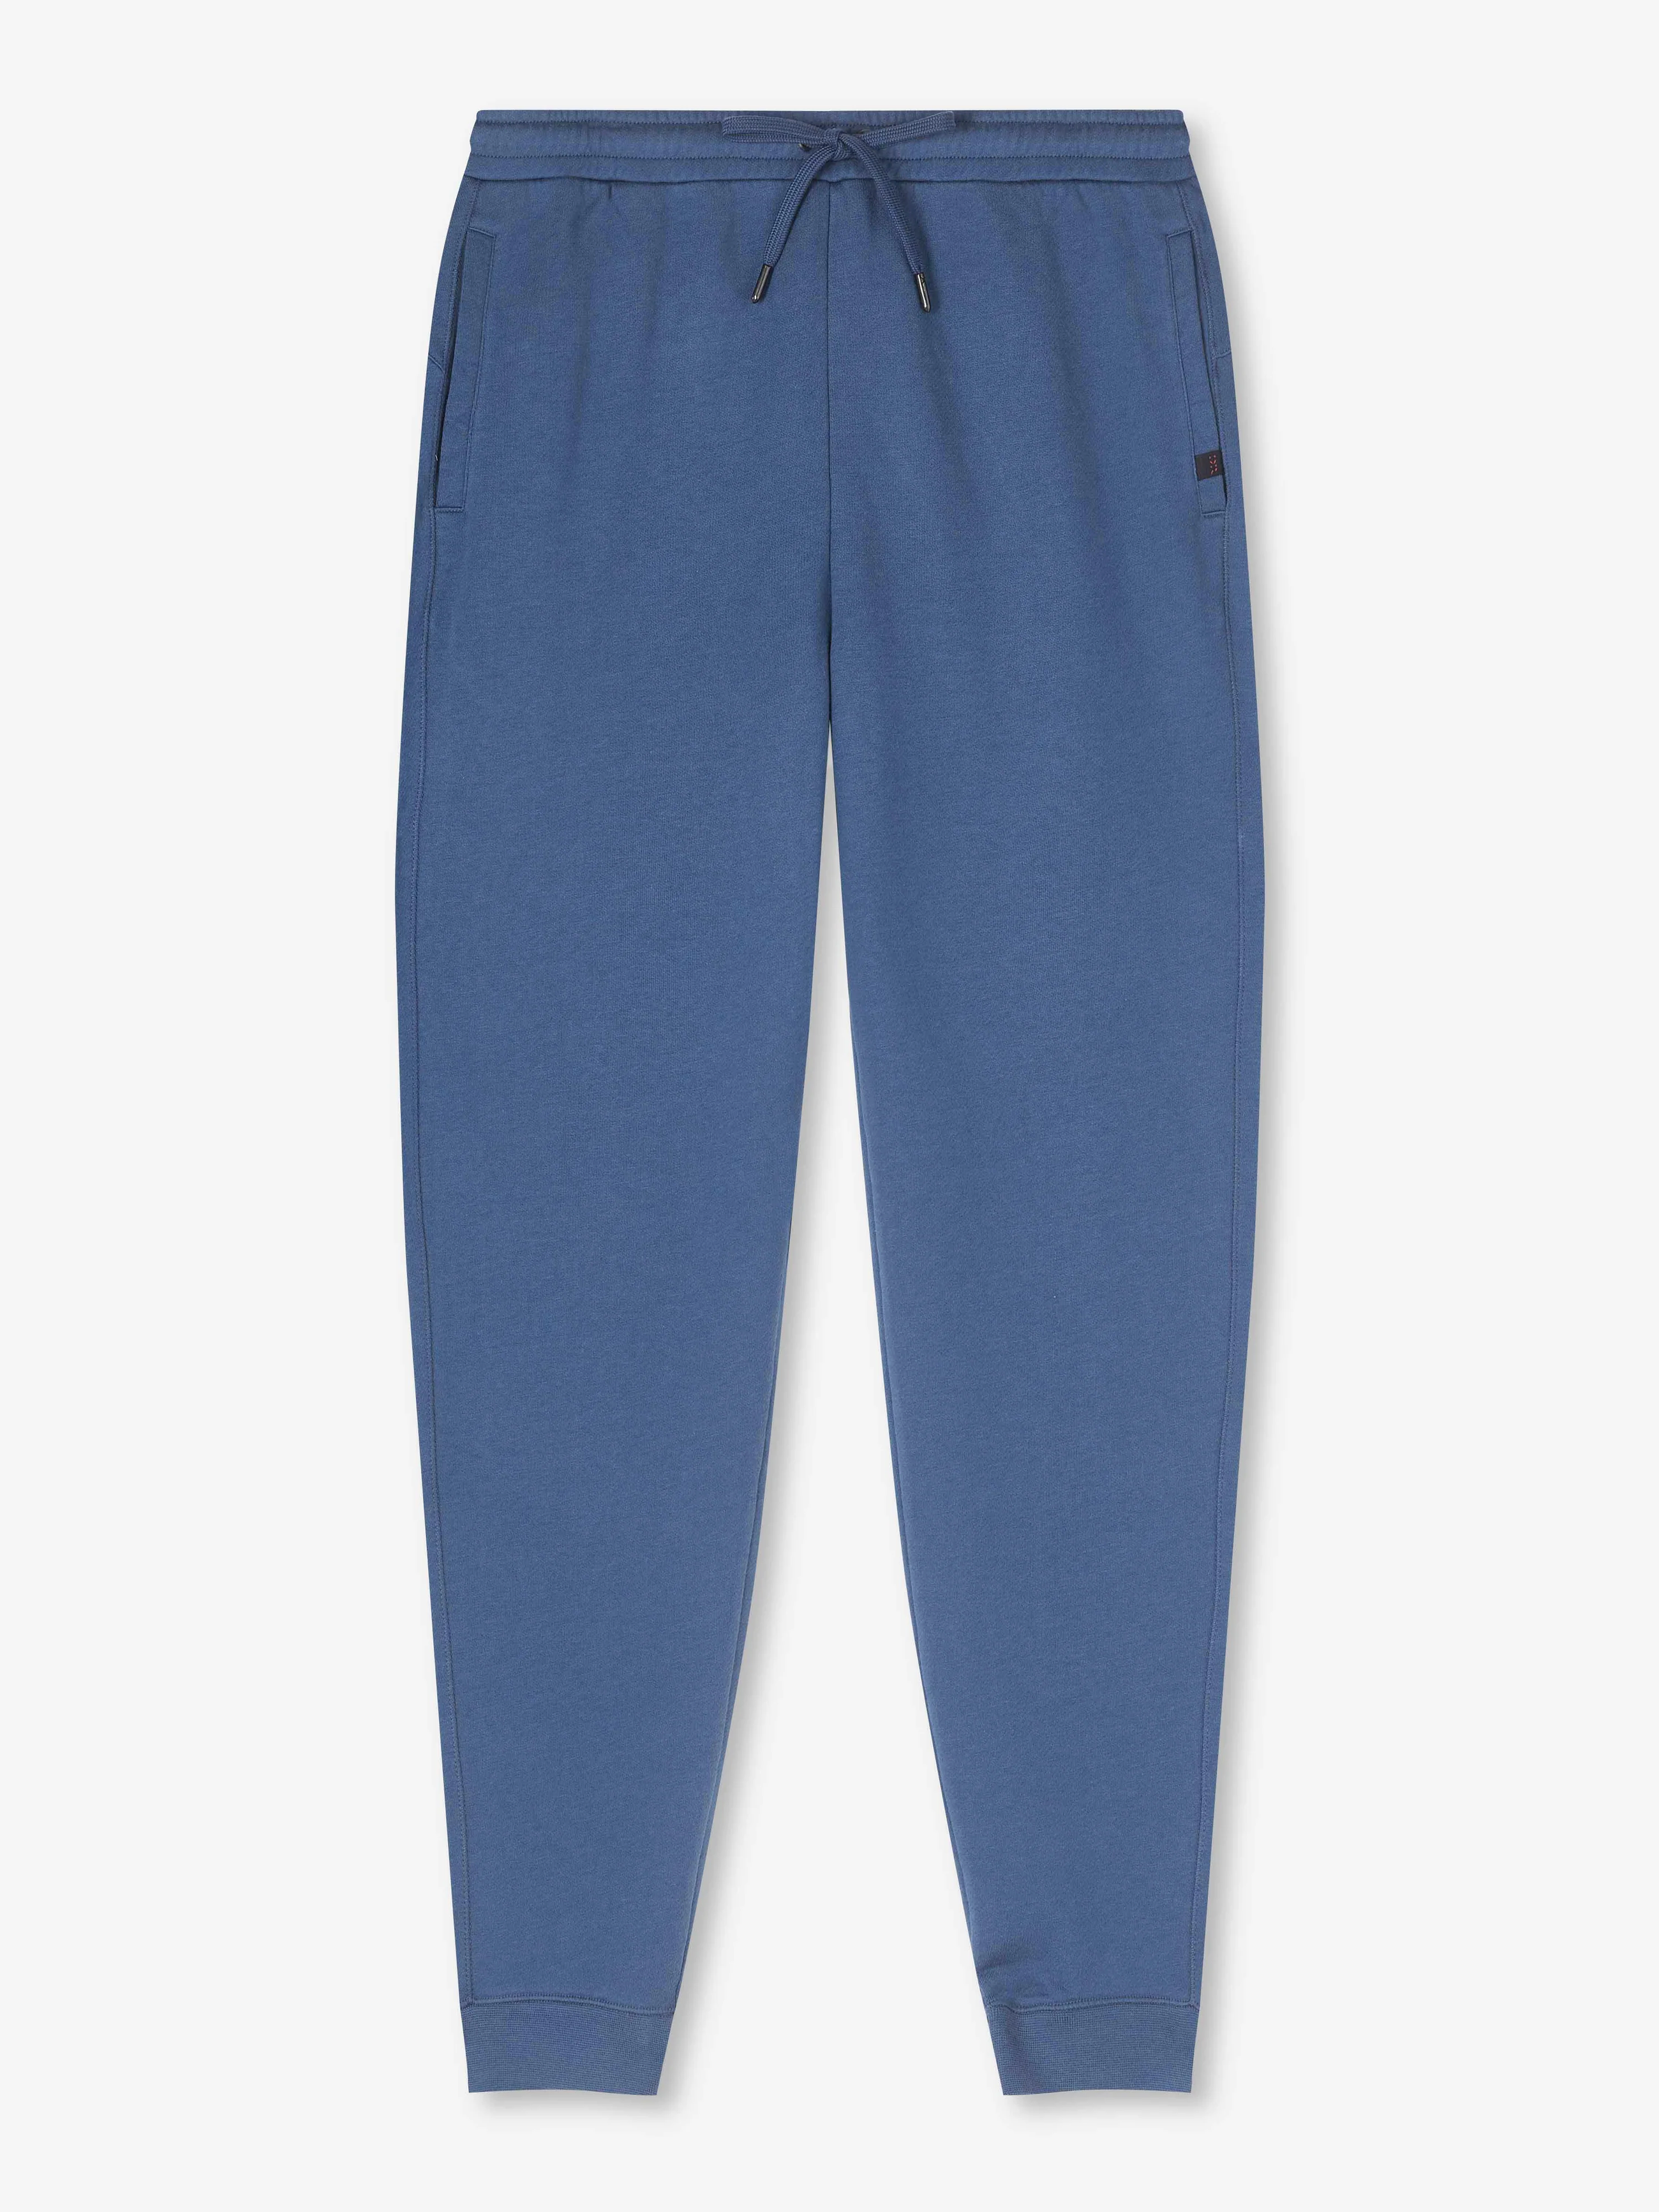 Men's Sweatpants Quinn Cotton Modal Storm Blue